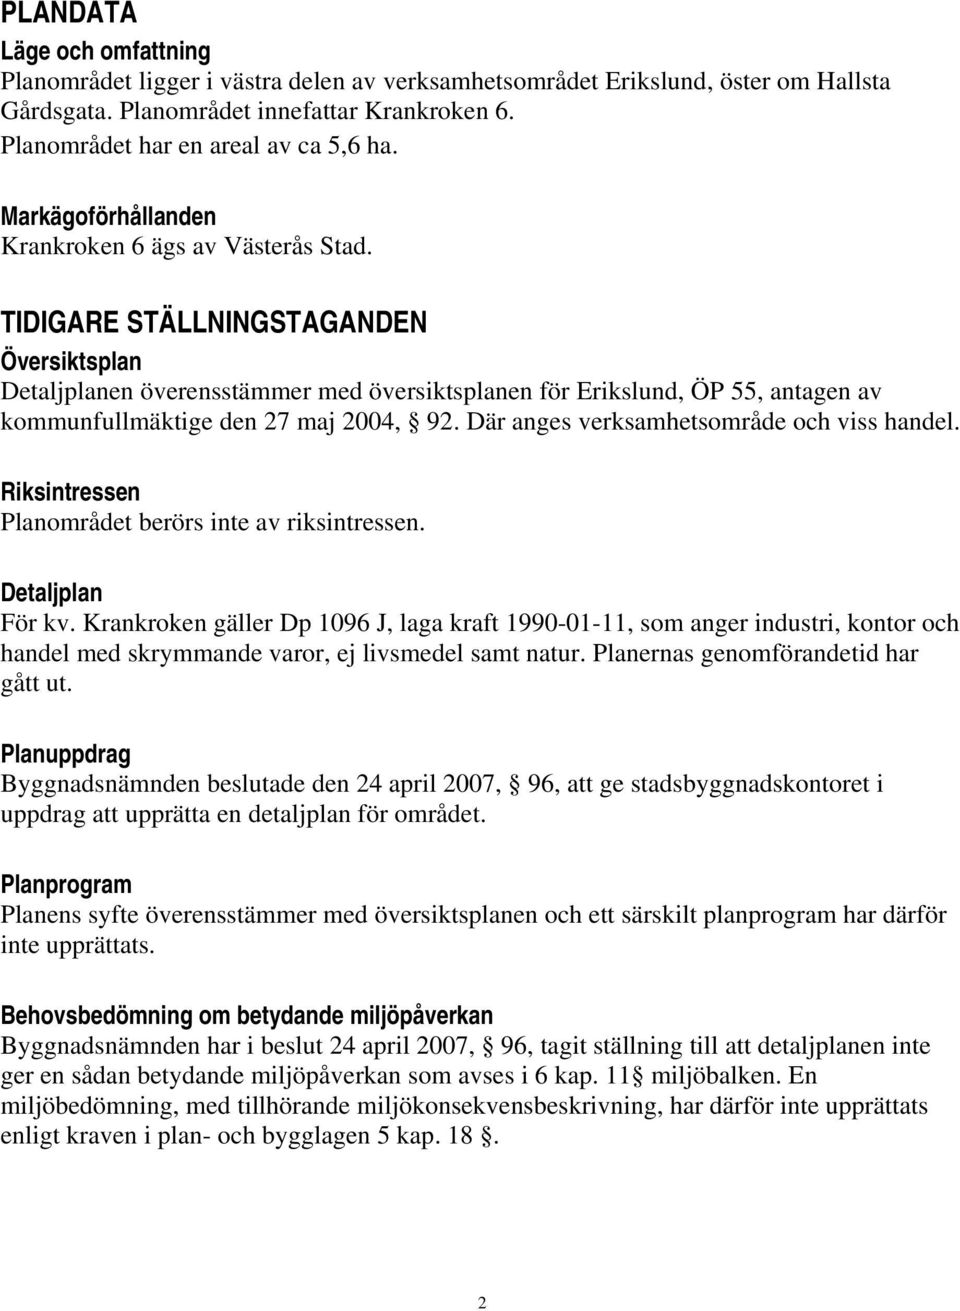 TIDIGARE STÄLLNINGSTAGANDEN Översiktsplan Detaljplanen överensstämmer med översiktsplanen för Erikslund, ÖP 55, antagen av kommunfullmäktige den 27 maj 2004, 92.